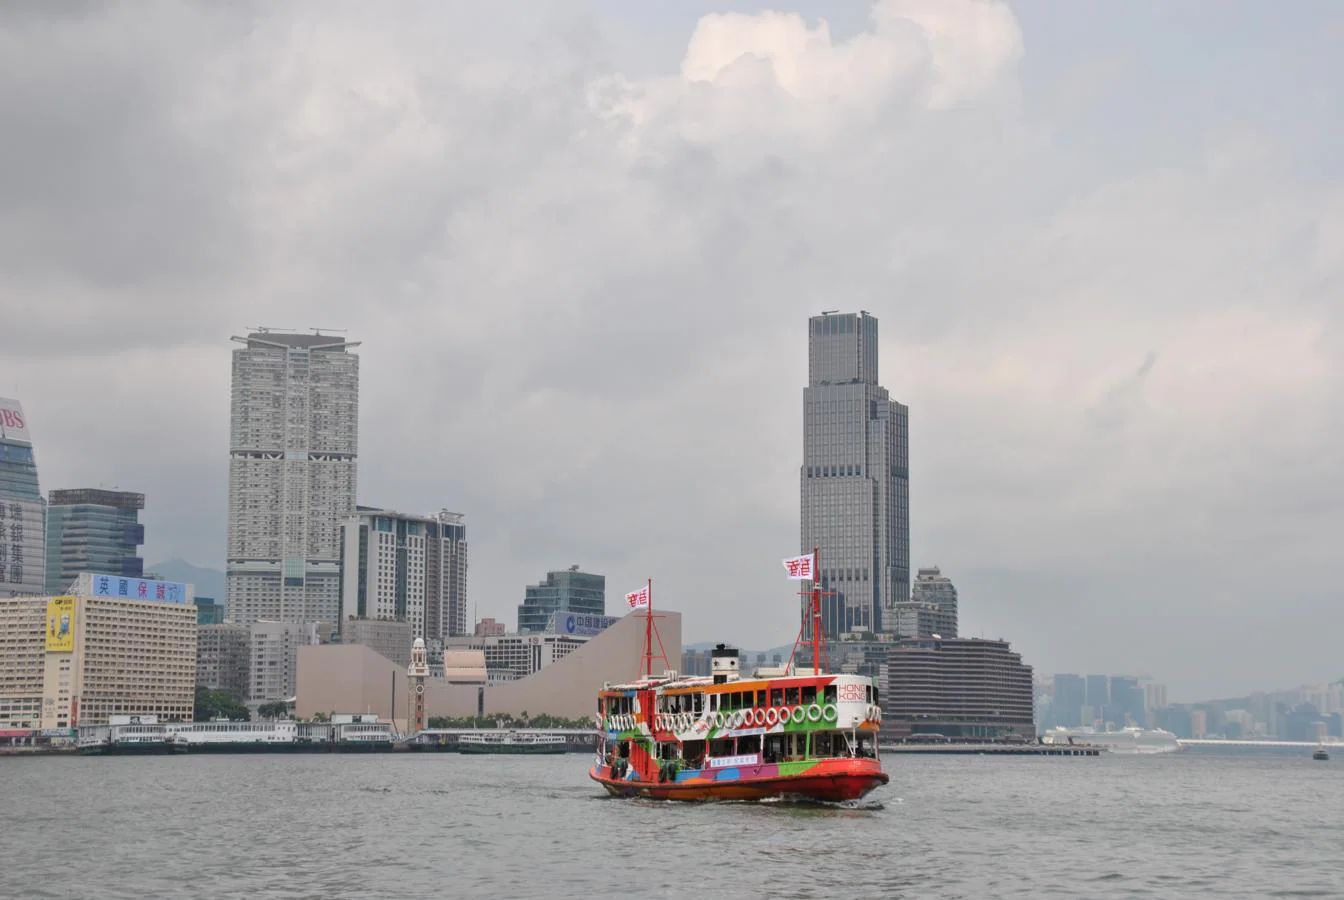 Start Ferry, ferry entre Hong Kong y Kowloon. Cedida por China a Reino Unido en 1842, la isla de Hong Kong permanecieron bajo soberanía británica hasta 1997 cuando volvieron al dominio chino pero manteniendo un sistema político propio y un status especial